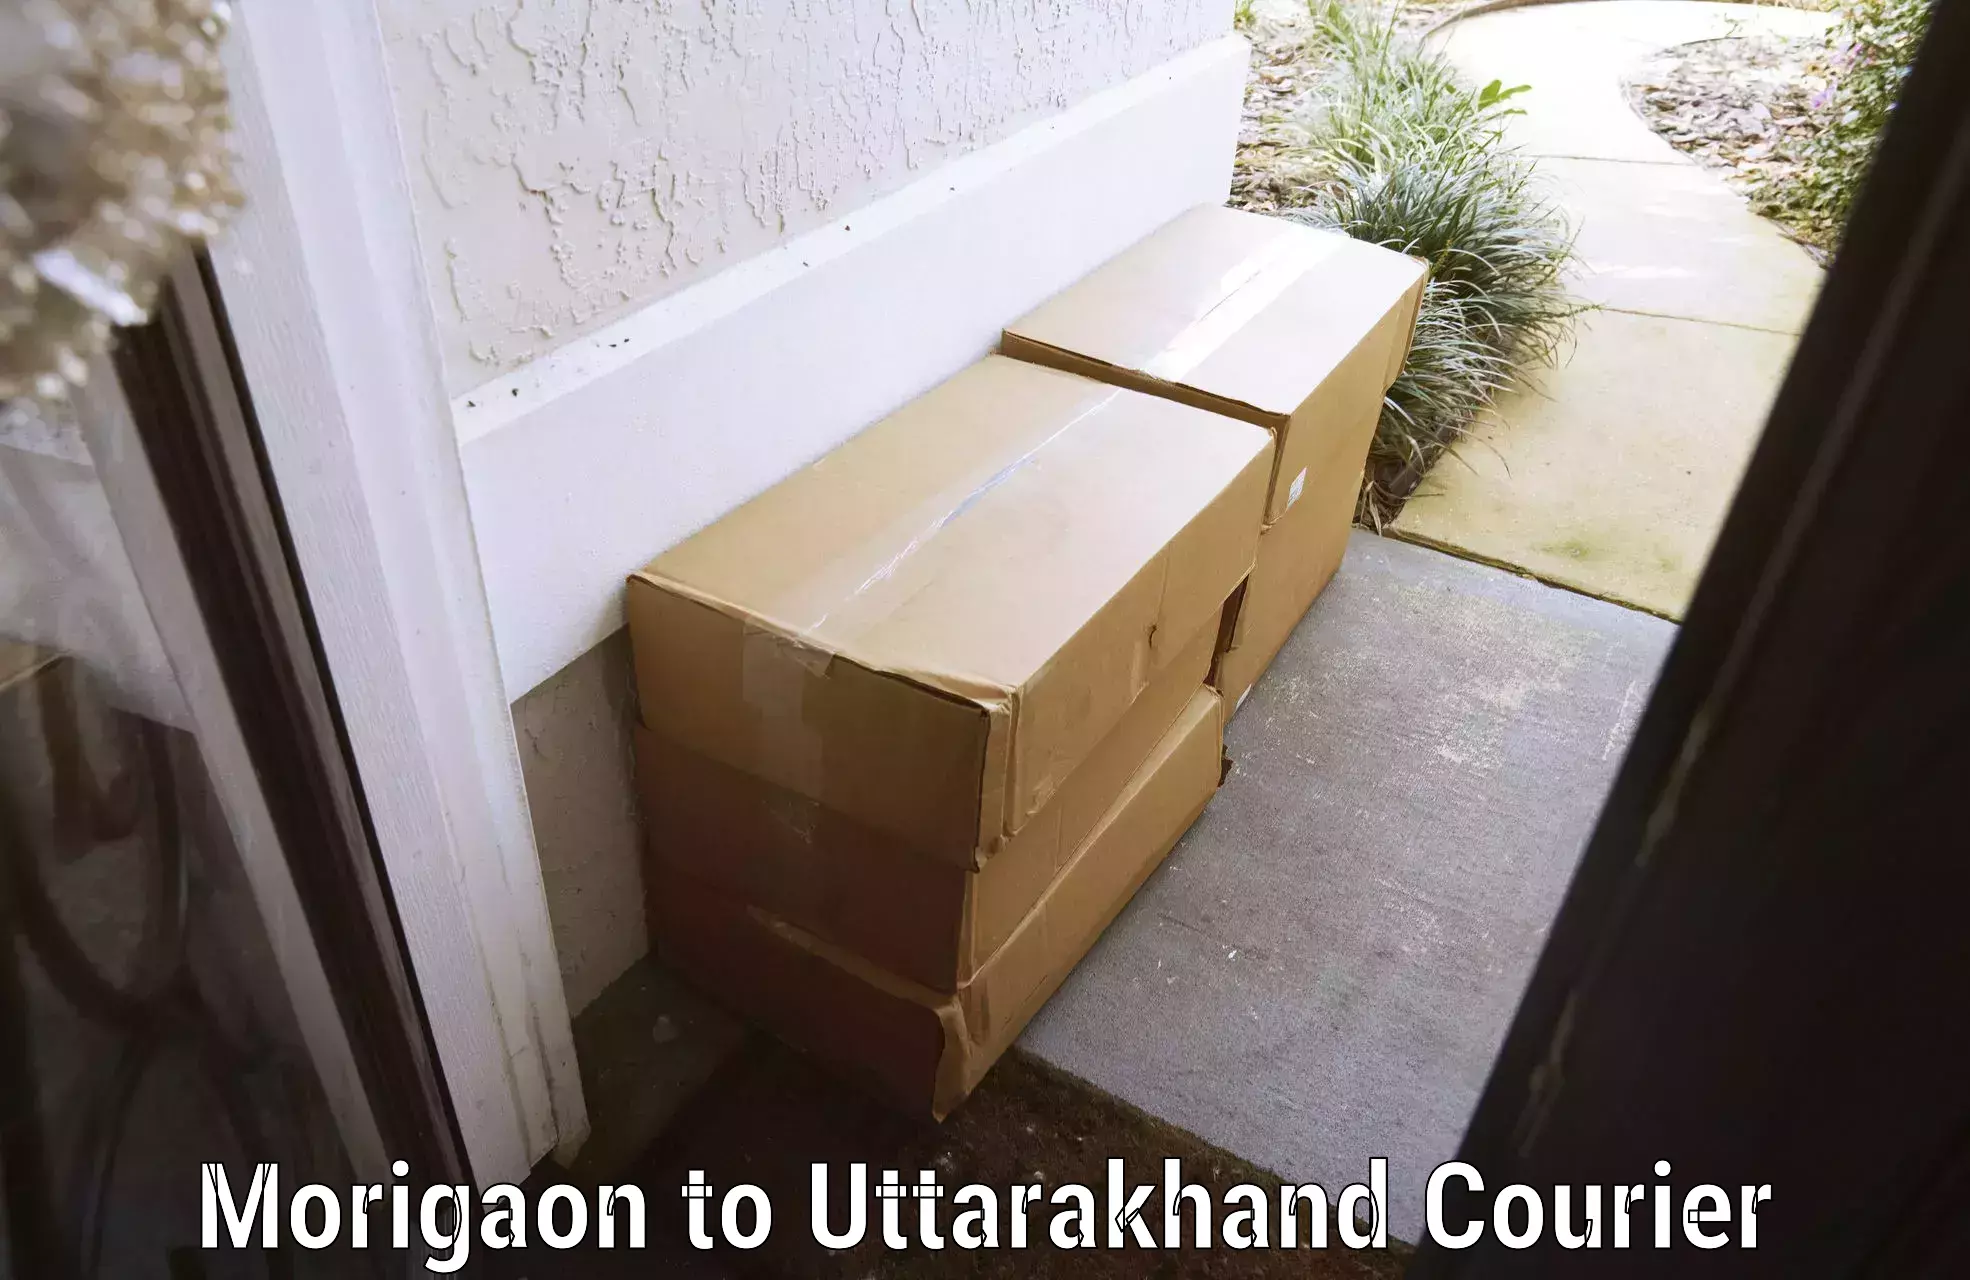 Luggage transport company Morigaon to Uttarakhand